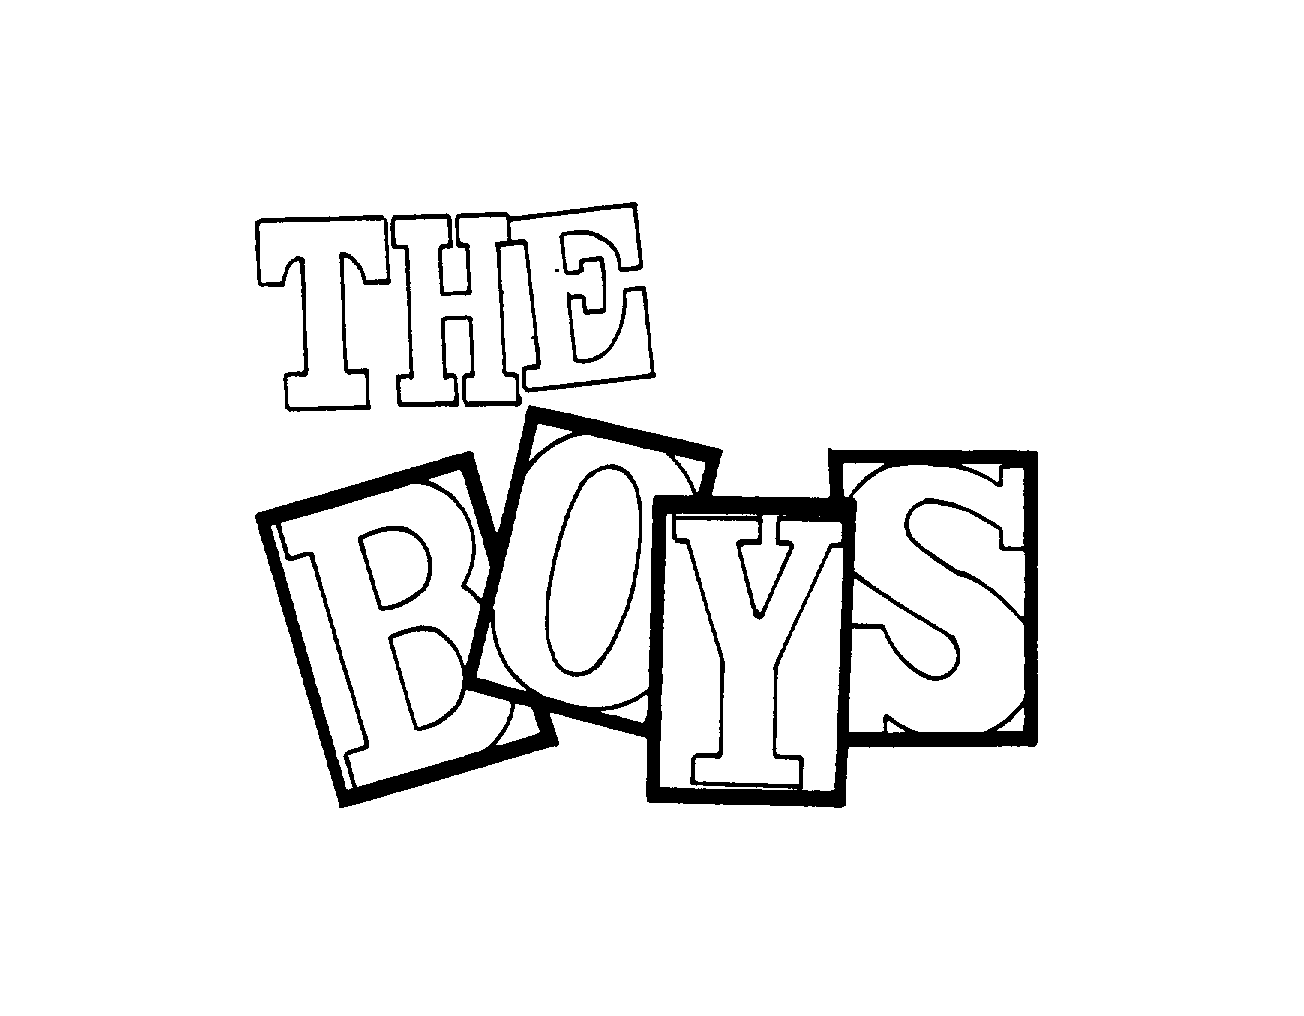  THE BOYS